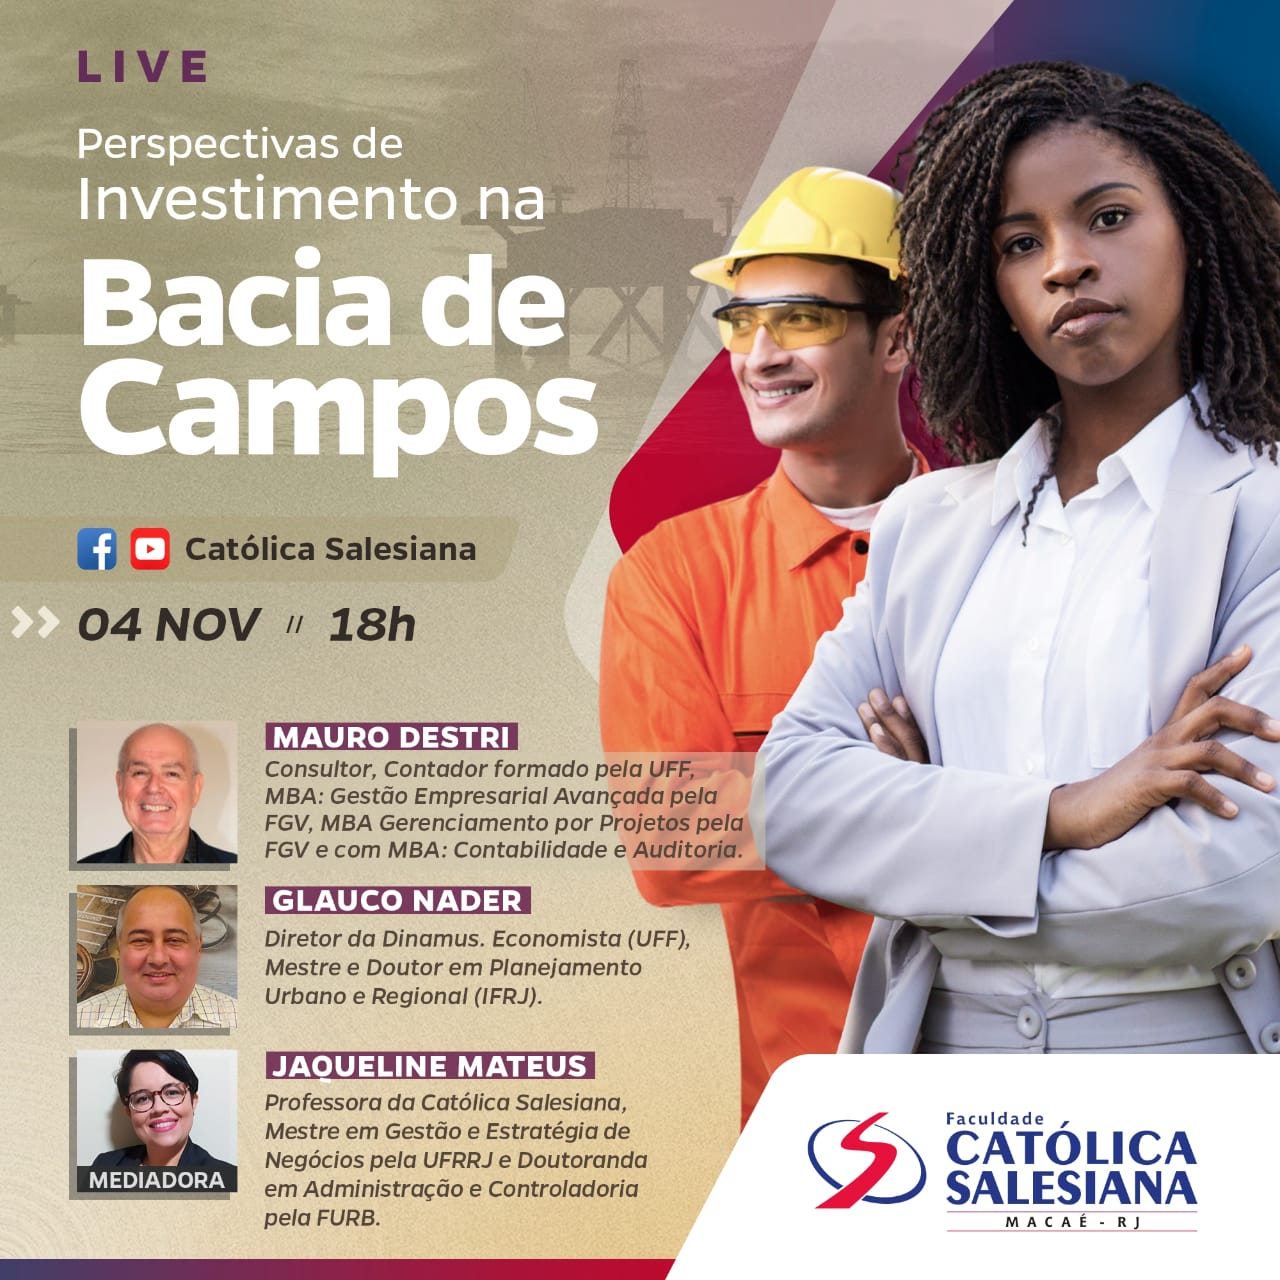 Live da Católica Salesiana vai apresentar as perspectivas de investimento na Bacia de Campos                                                                                      